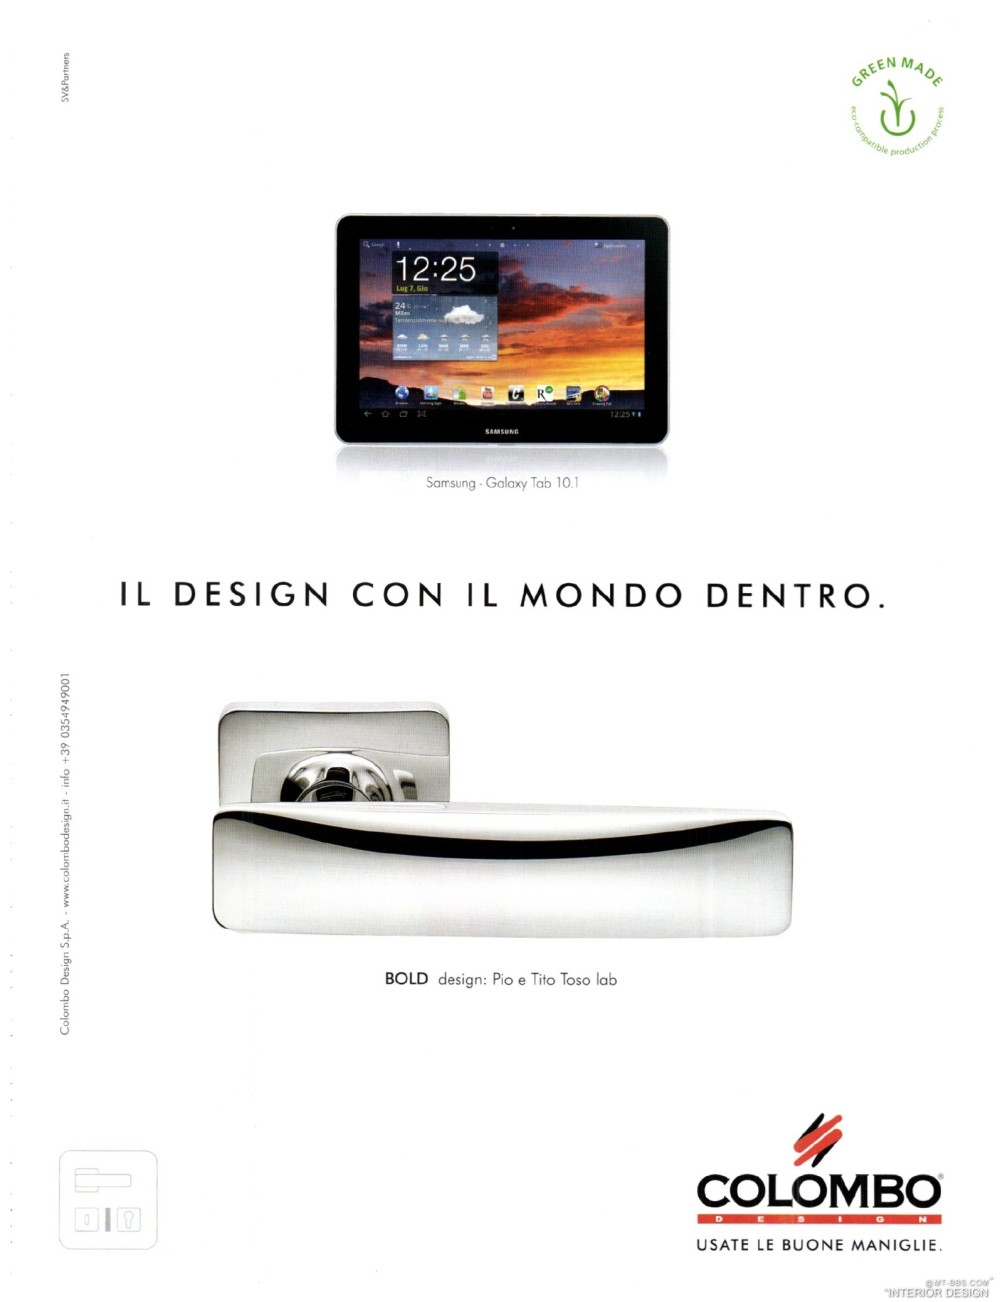 意大利AD 杂志 2012年全年JPG高清版本 全免（上传完毕）_0075.jpg